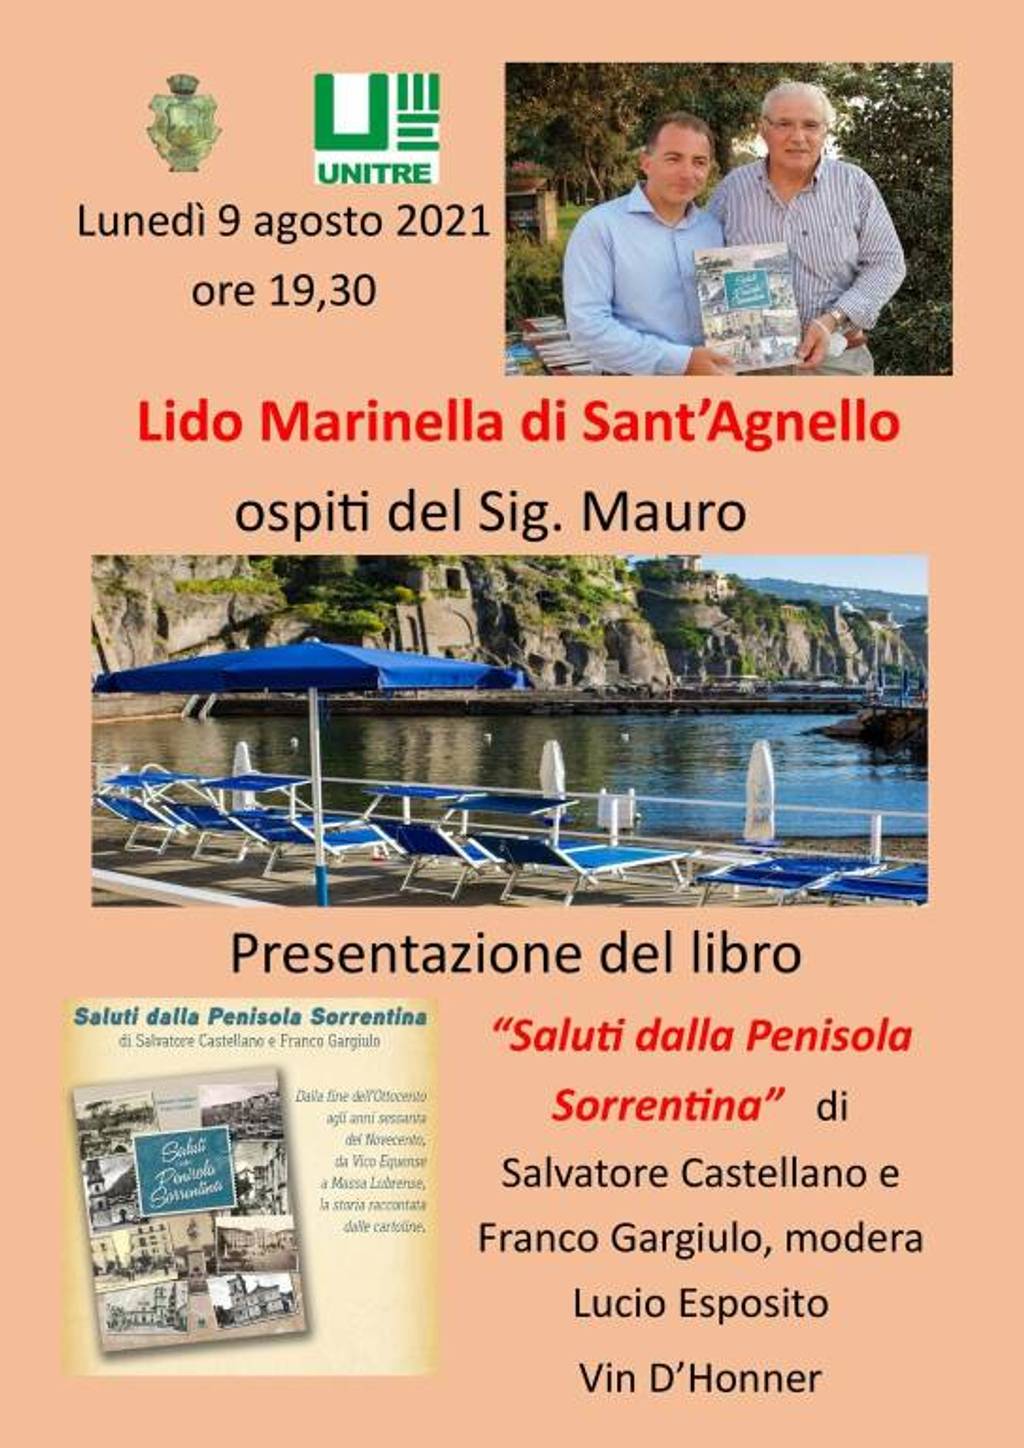 Book presentation: "Saluti dalla Penisola Sorrentina"